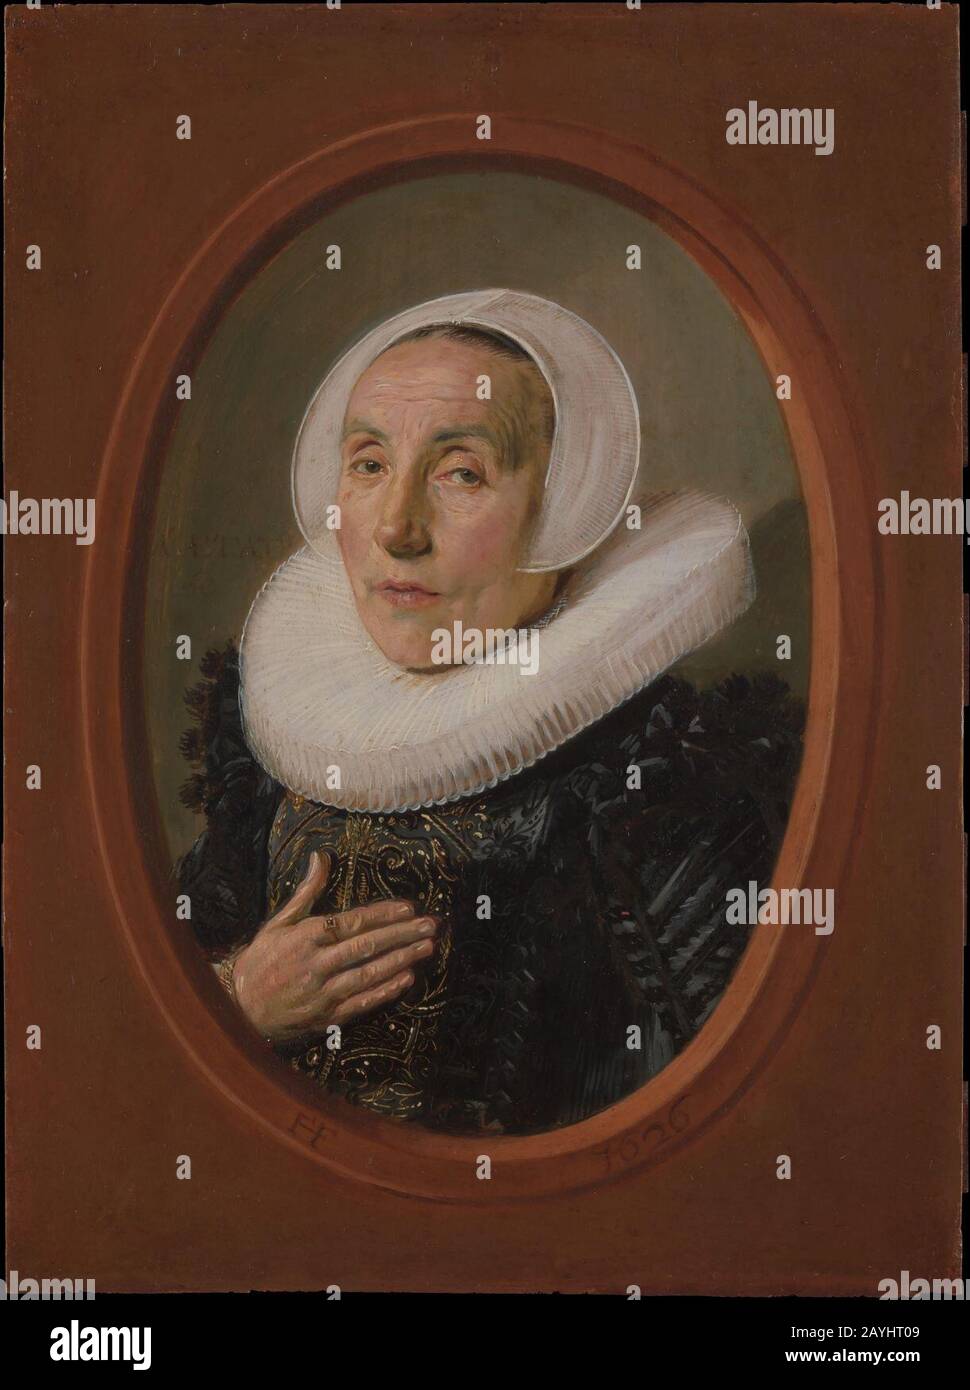 Frans Hals - Anna van der Aar Stock Photo - Alamy